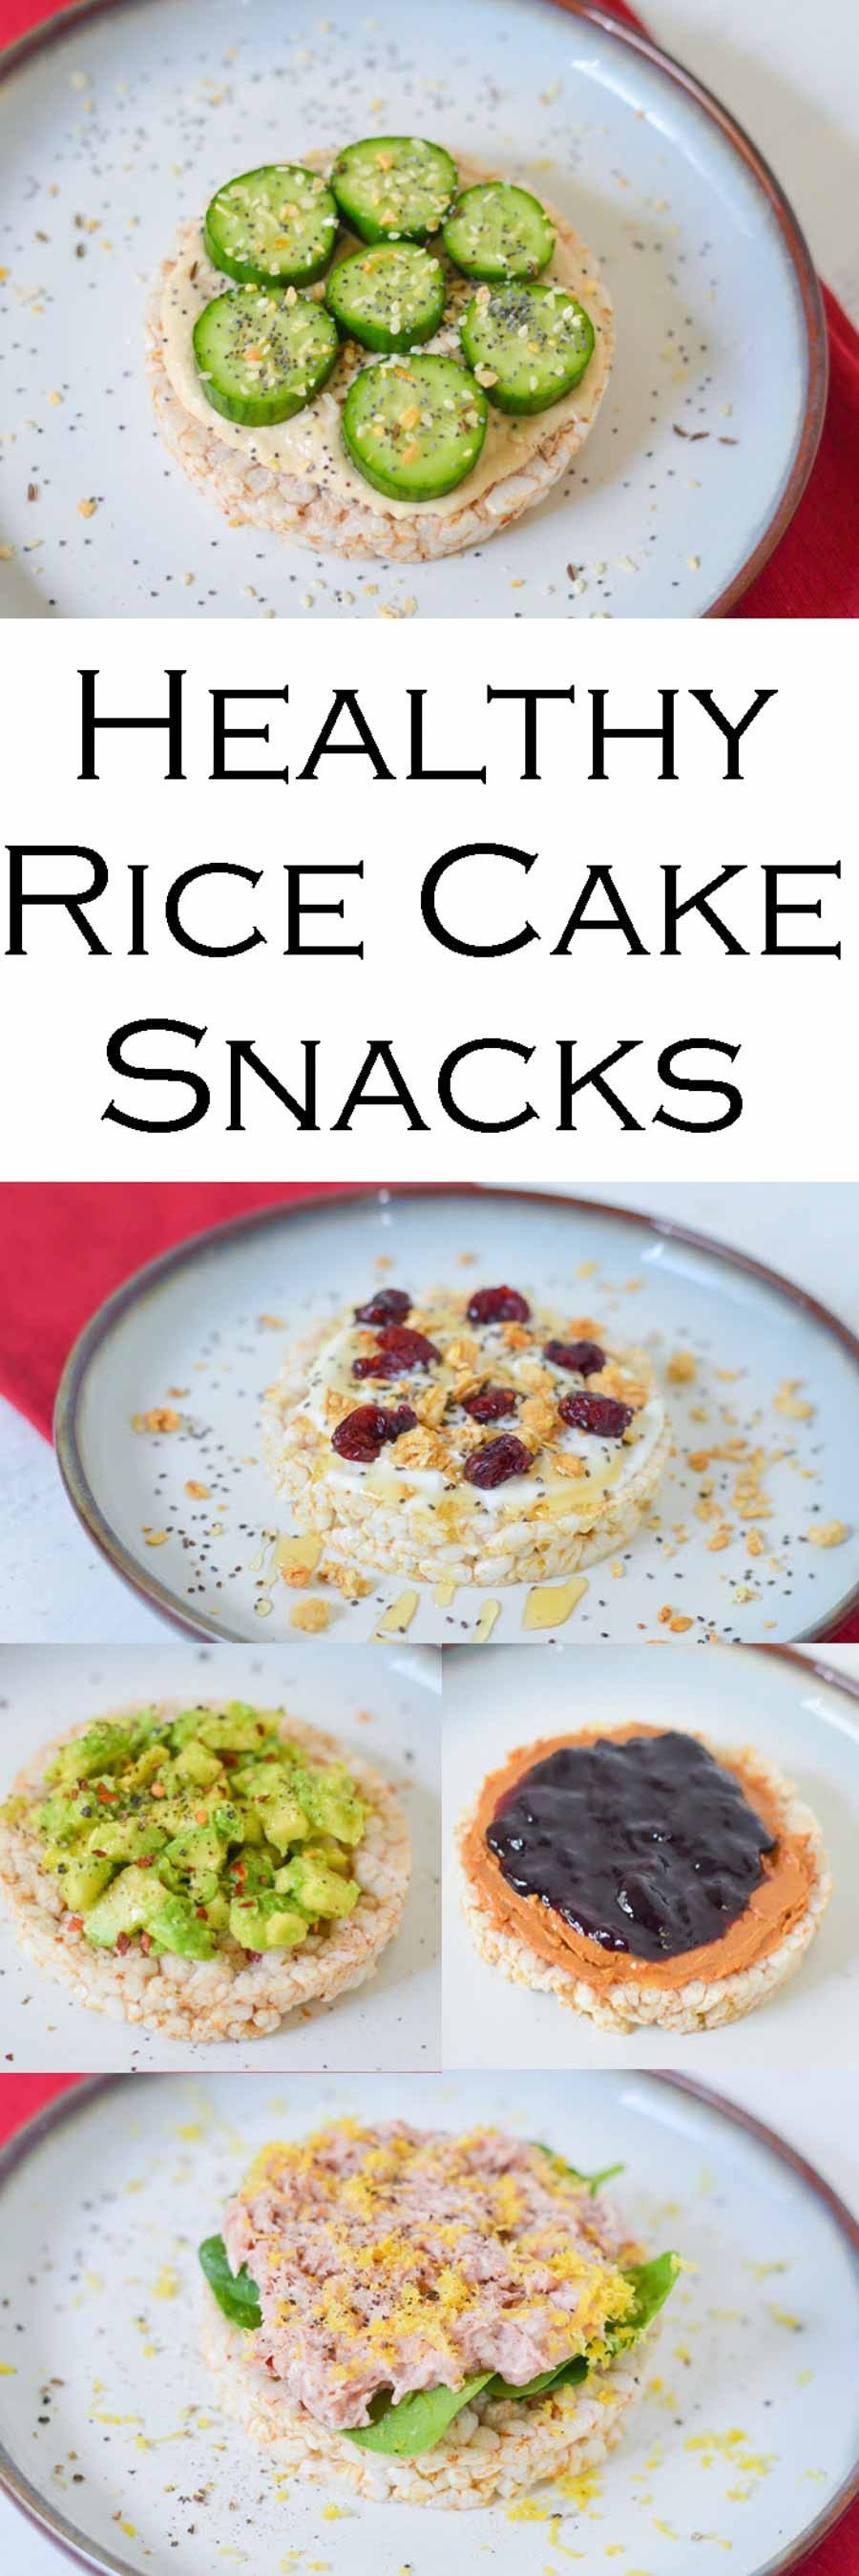 Healthy Rice Cake Snacks
 5 Healthy Rice Cake Snack Meal Ideas